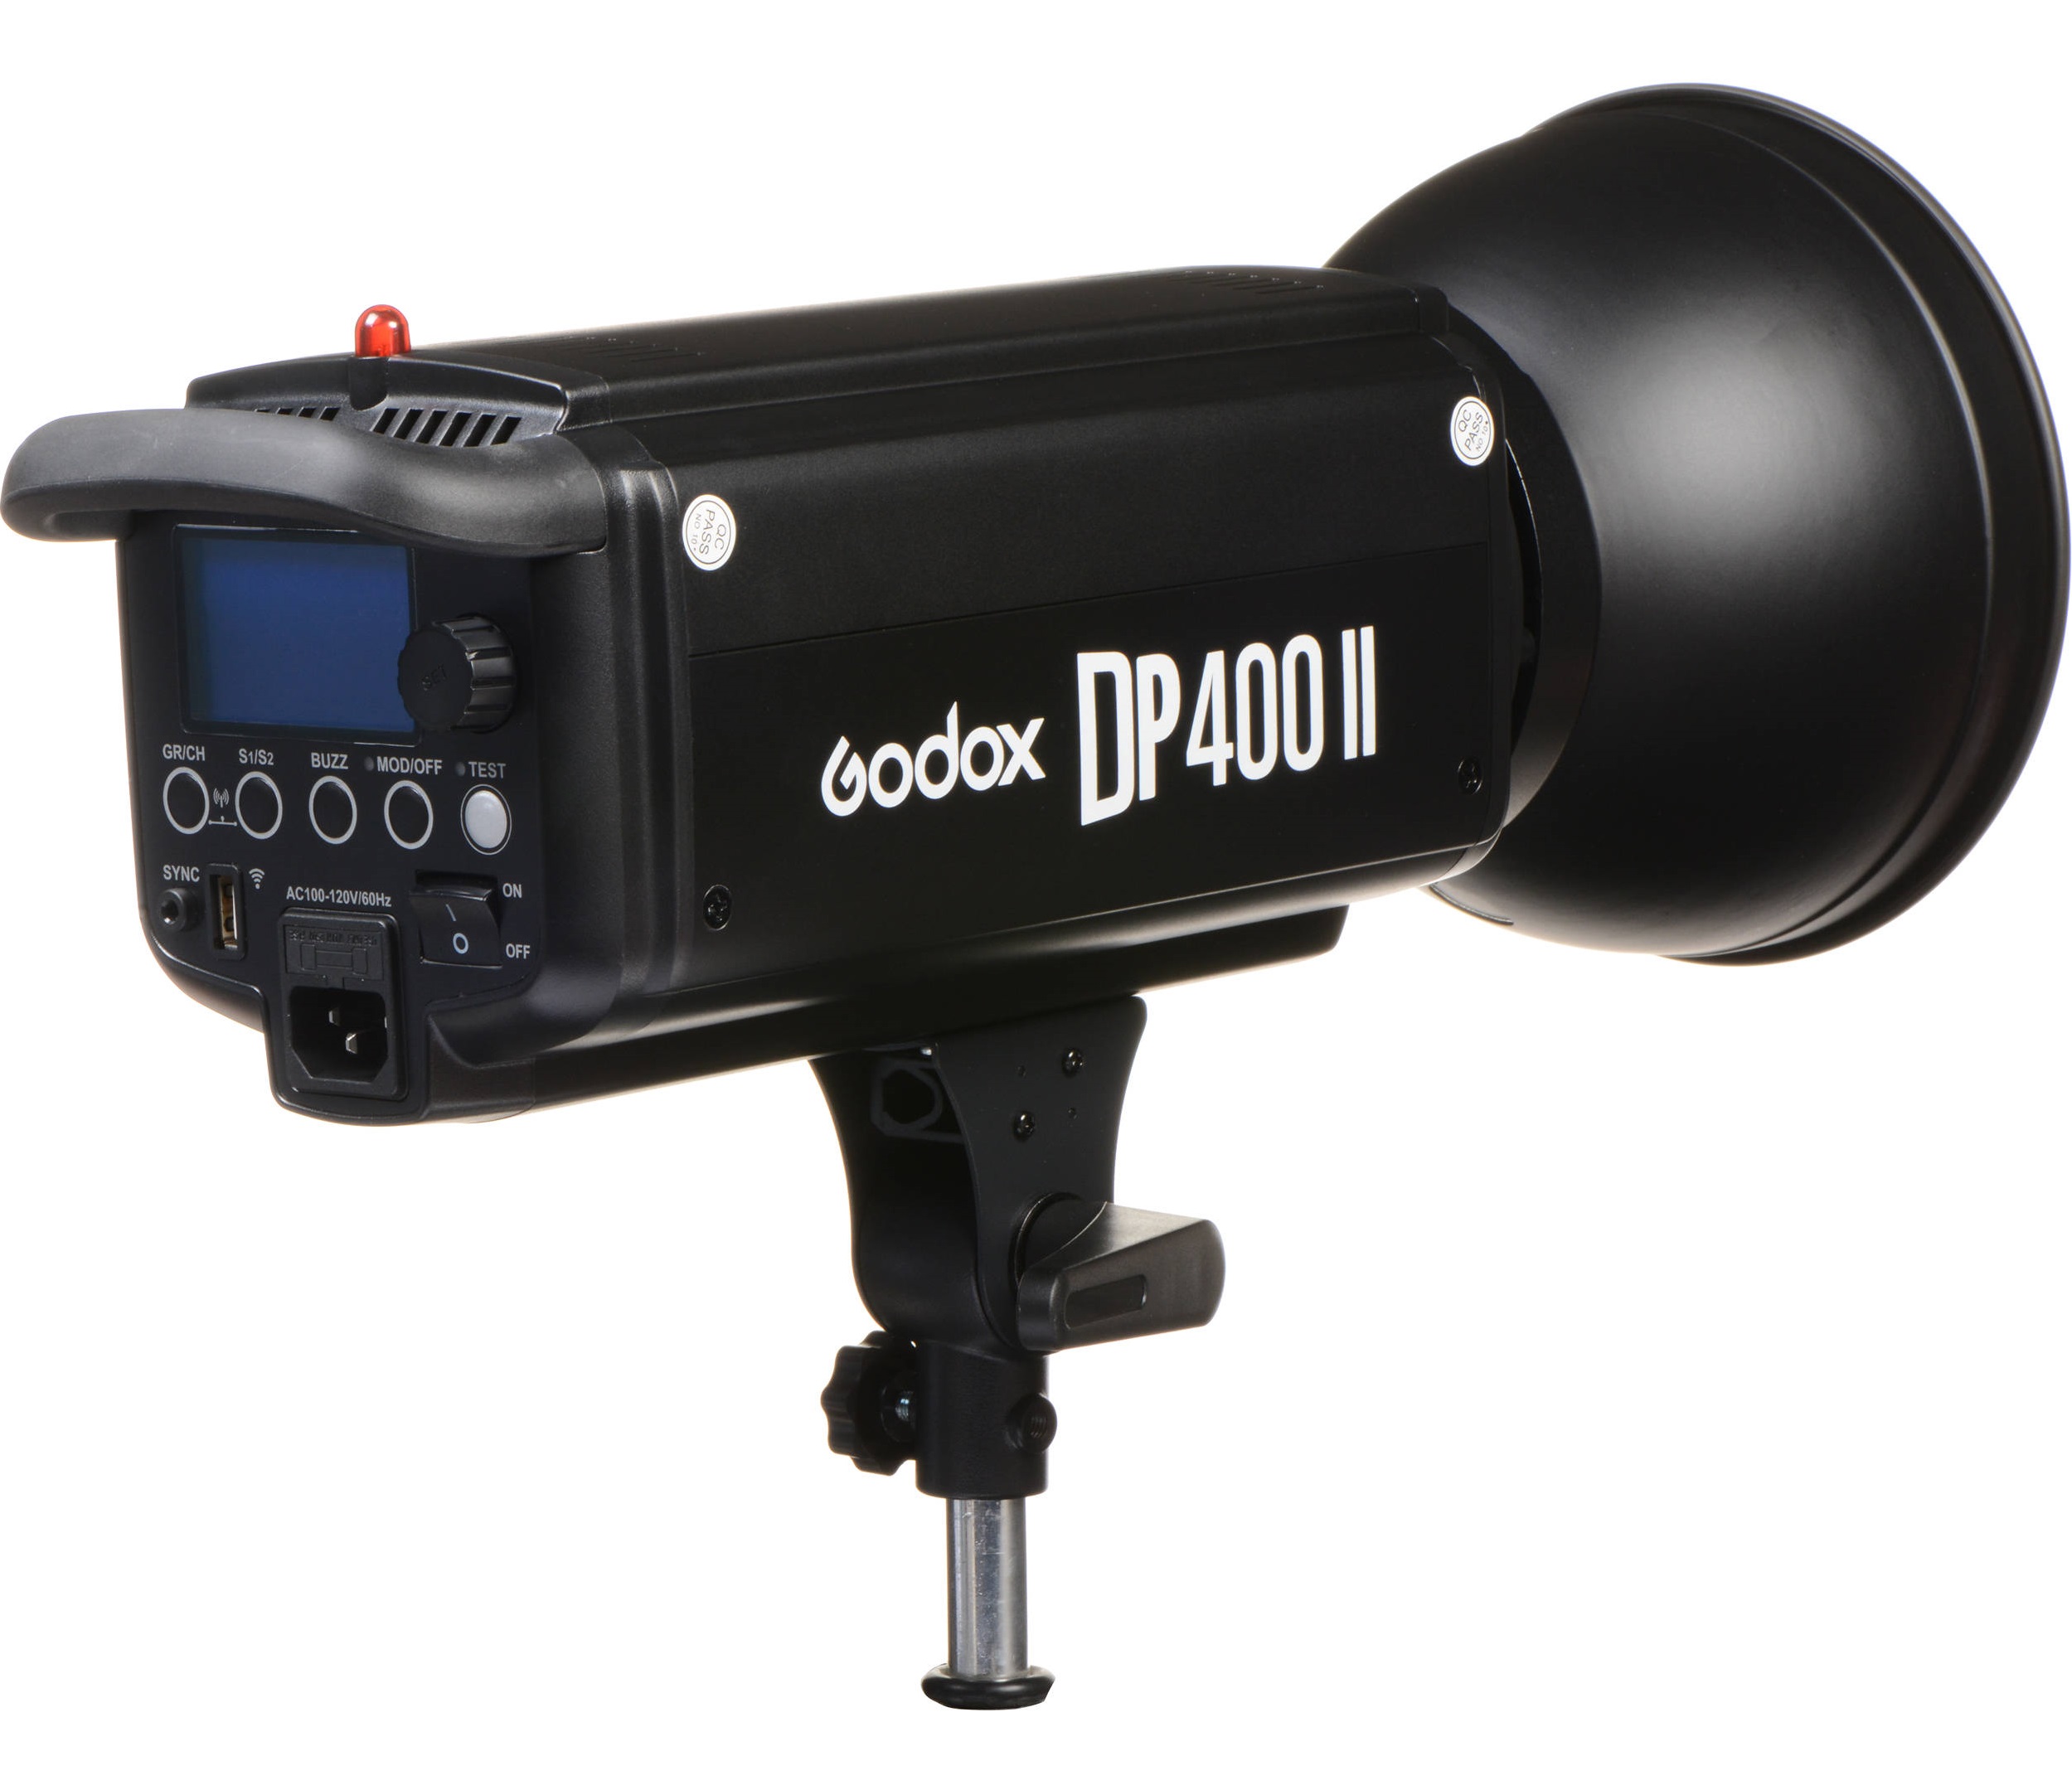 Đèn Godox DP400II cung cấp đầu ra ổn định